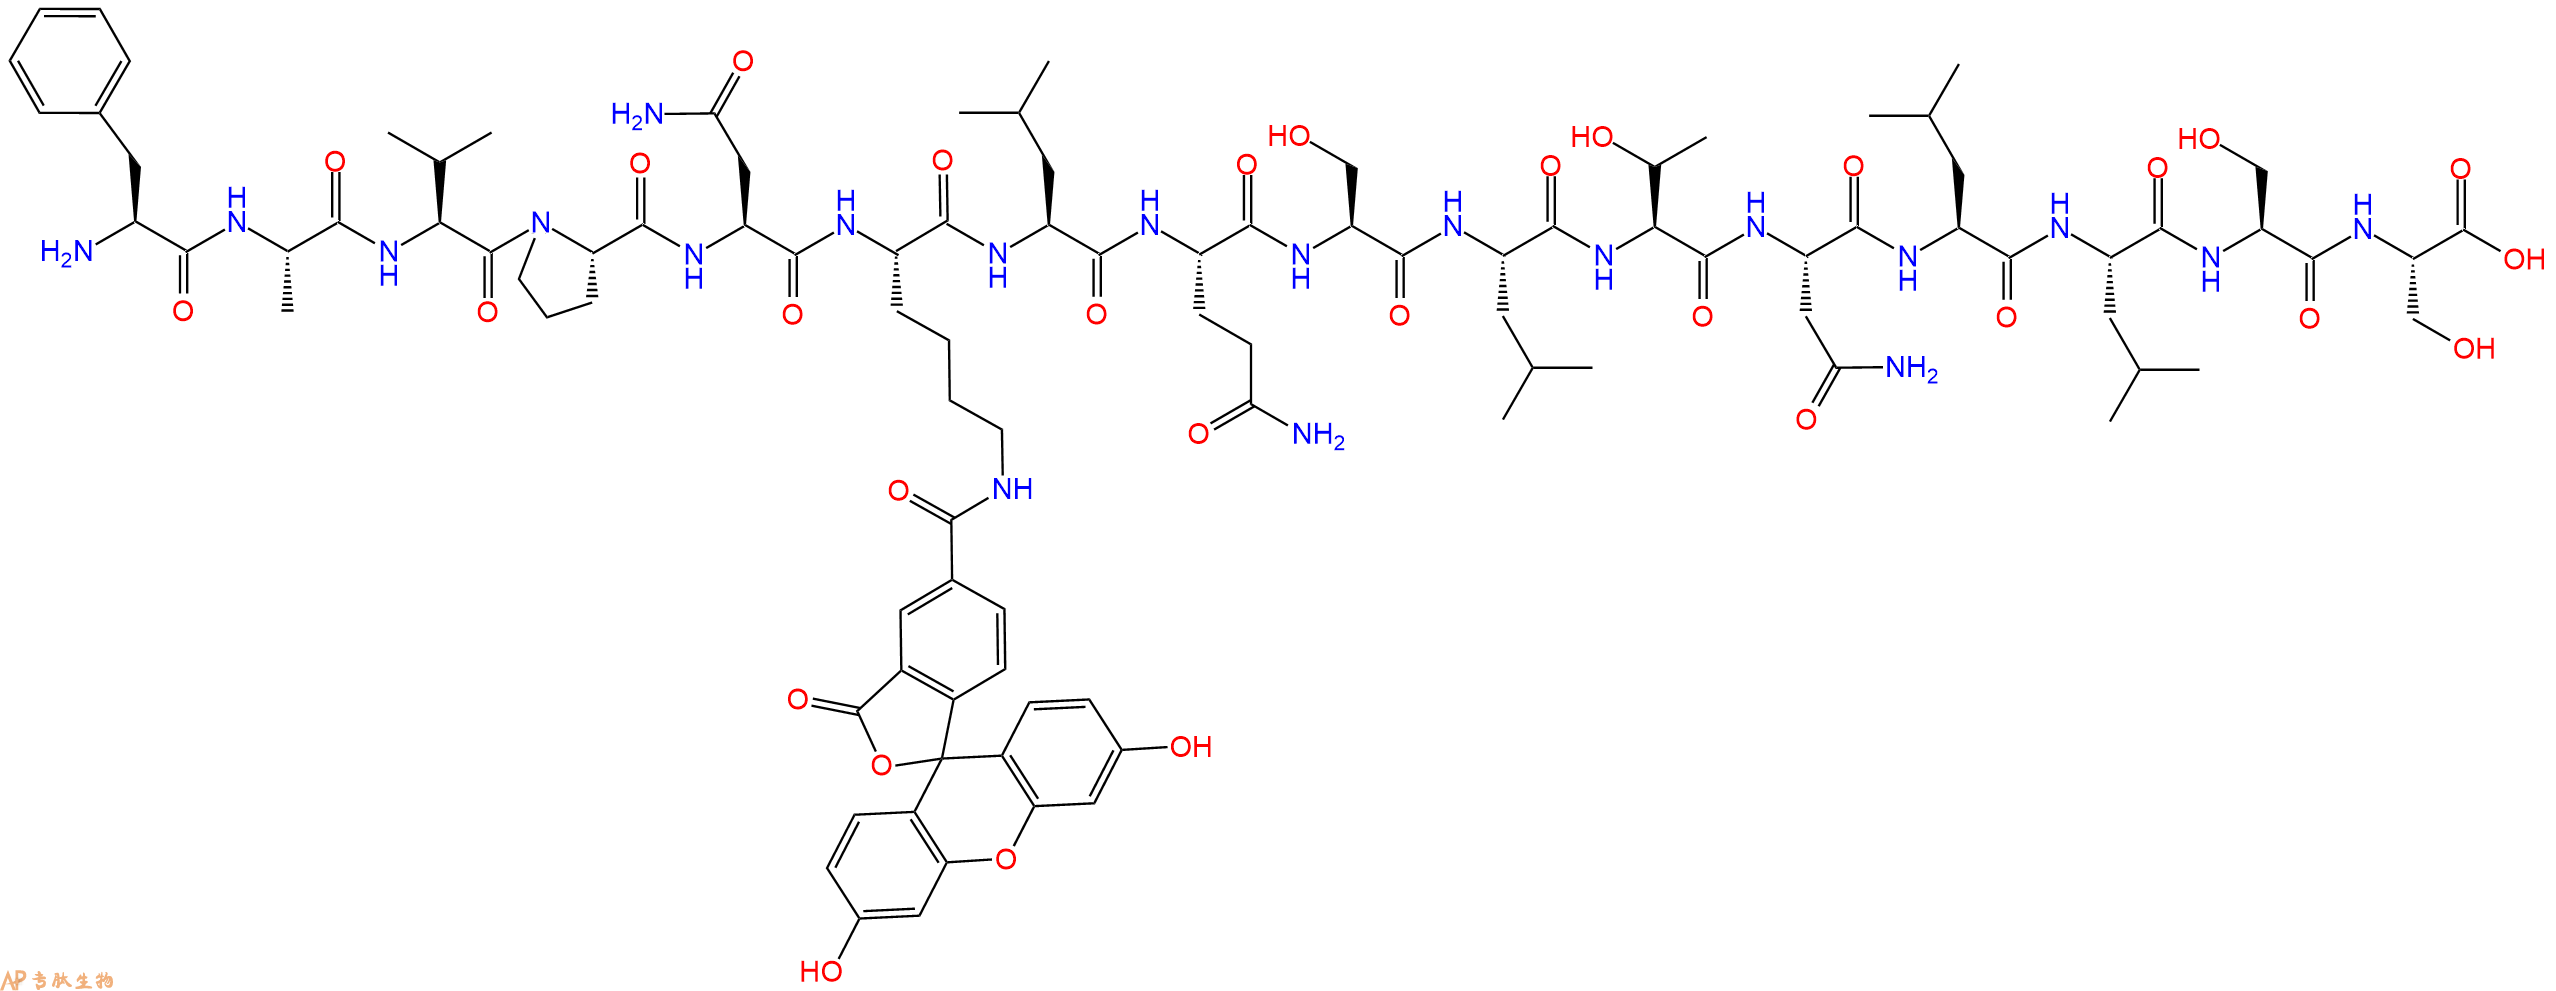 专肽生物产品H2N-Phe-Ala-Val-Pro-Asn-Lys(5Fam)-Leu-Gln-Ser-Leu-